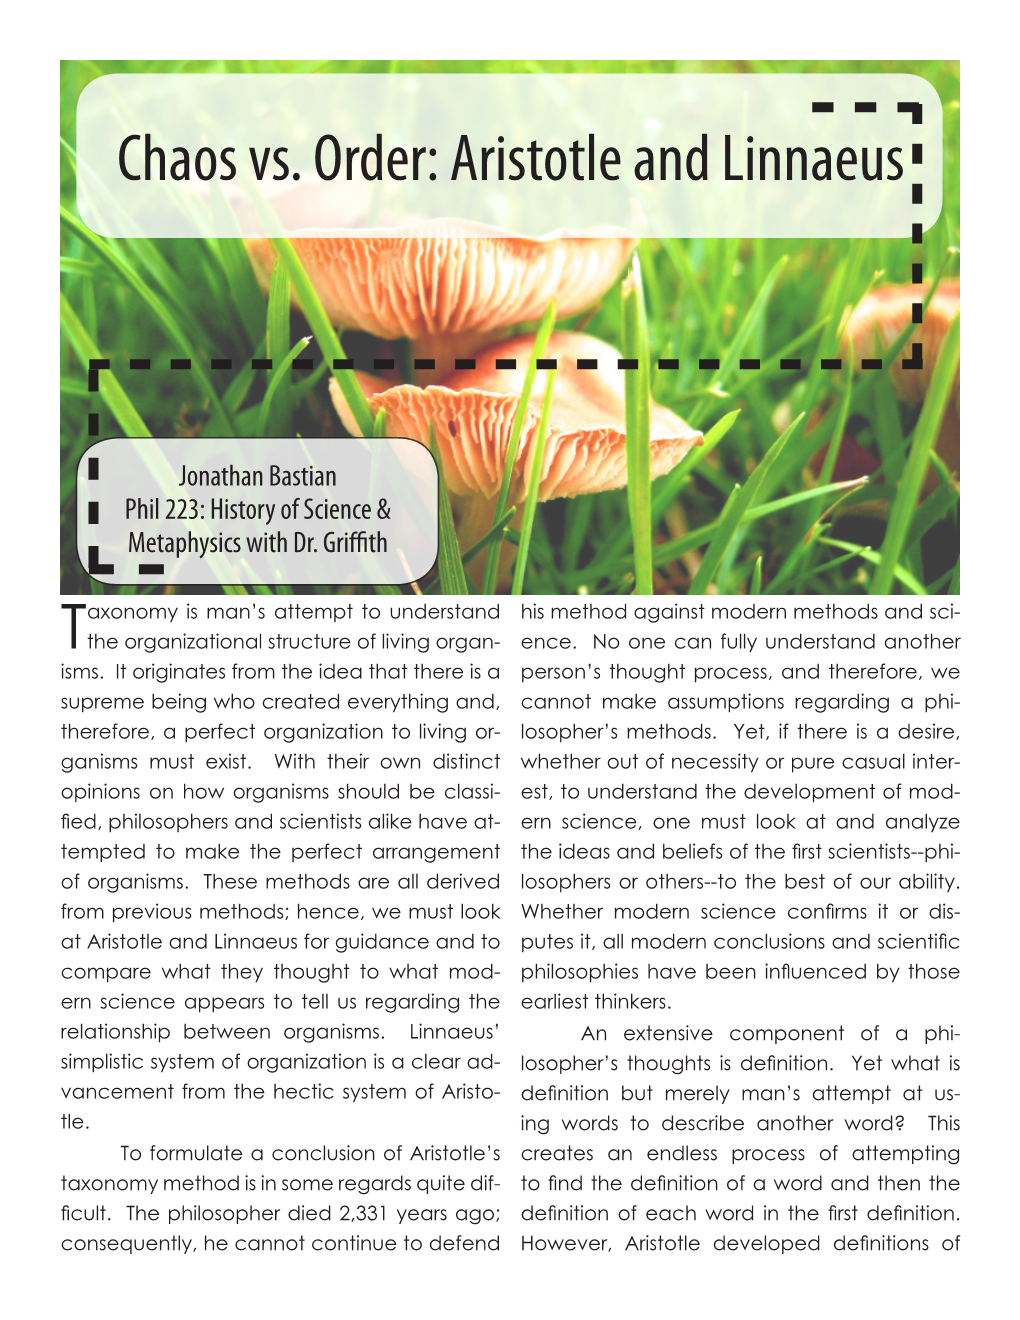 Chaos Vs. Order: Aristotle and Linnaeus